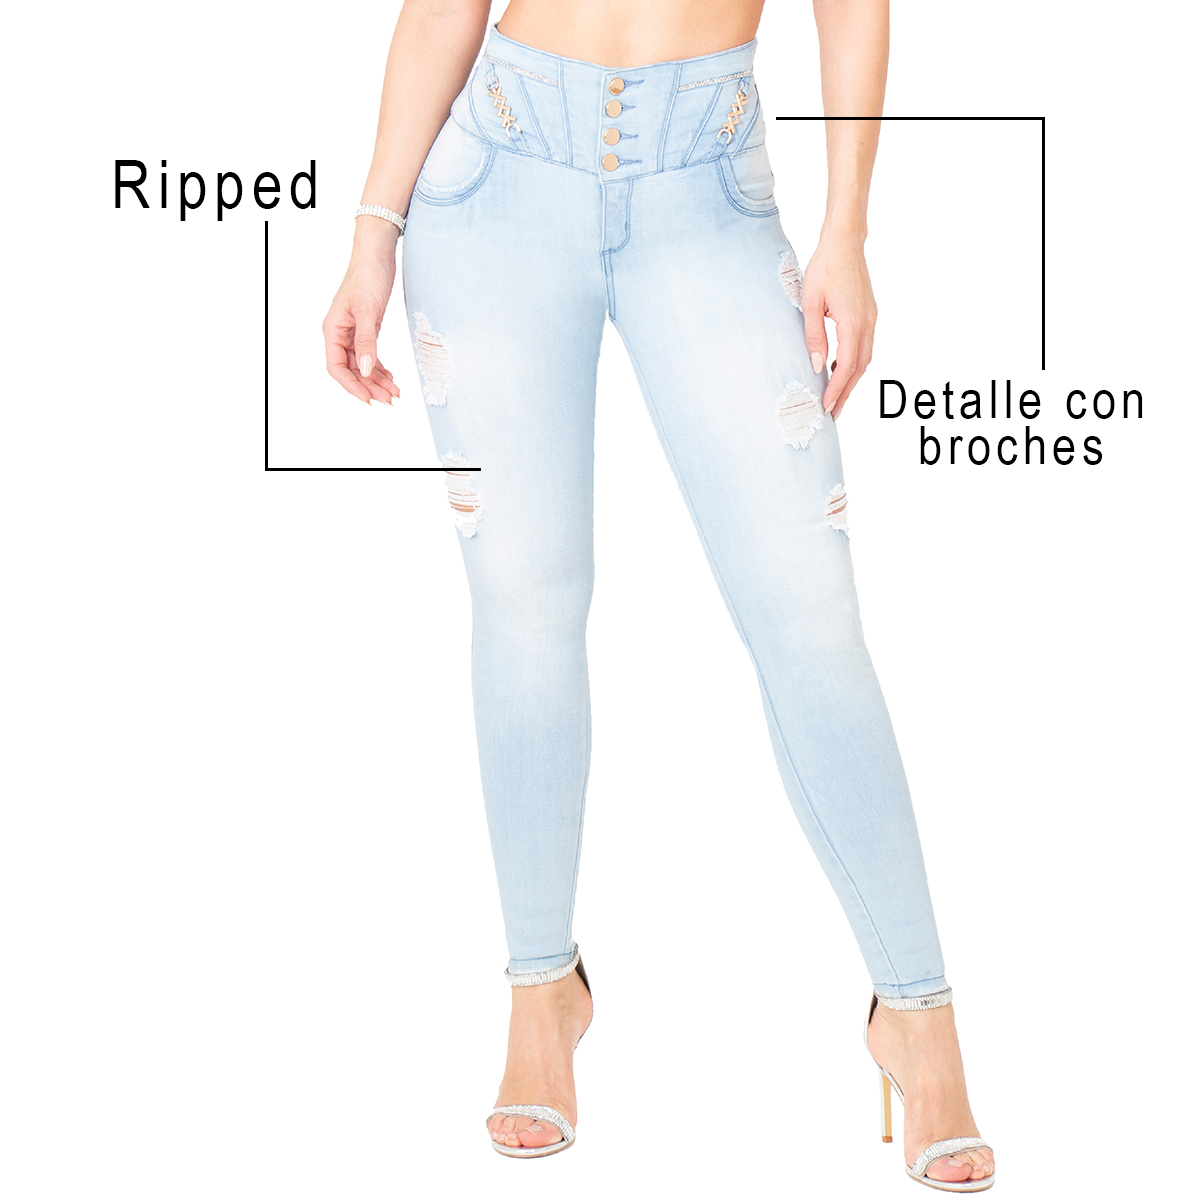 El jean colombiano levanta glúteos tiene un diseño especial que realza tus curvas. Es la prenda perfecta que te hara sentir segura y con un toque unico.